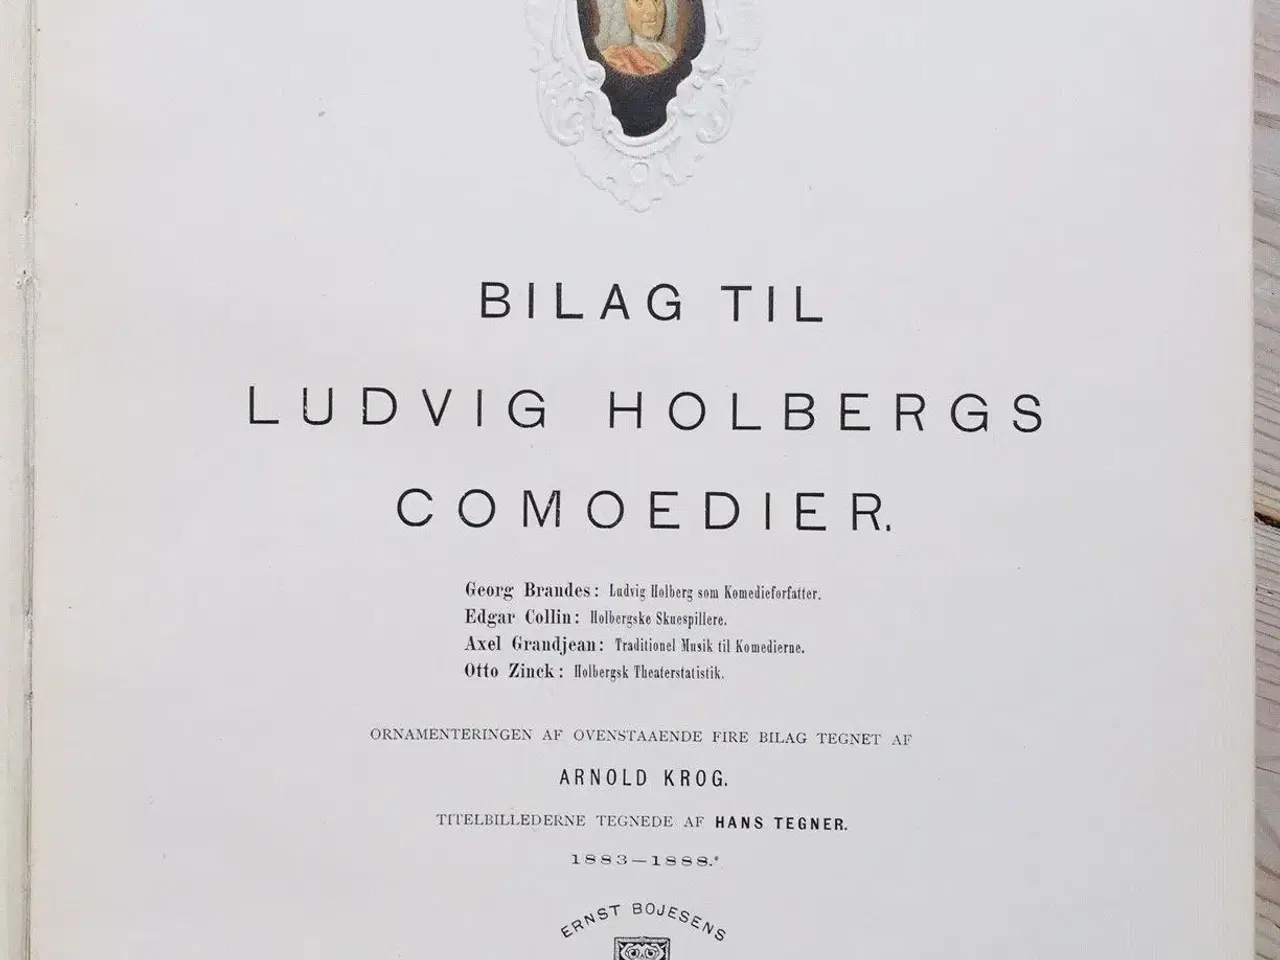 Billede 2 - Jubeludgave af Ludvig Holbergs samtlige comoedier